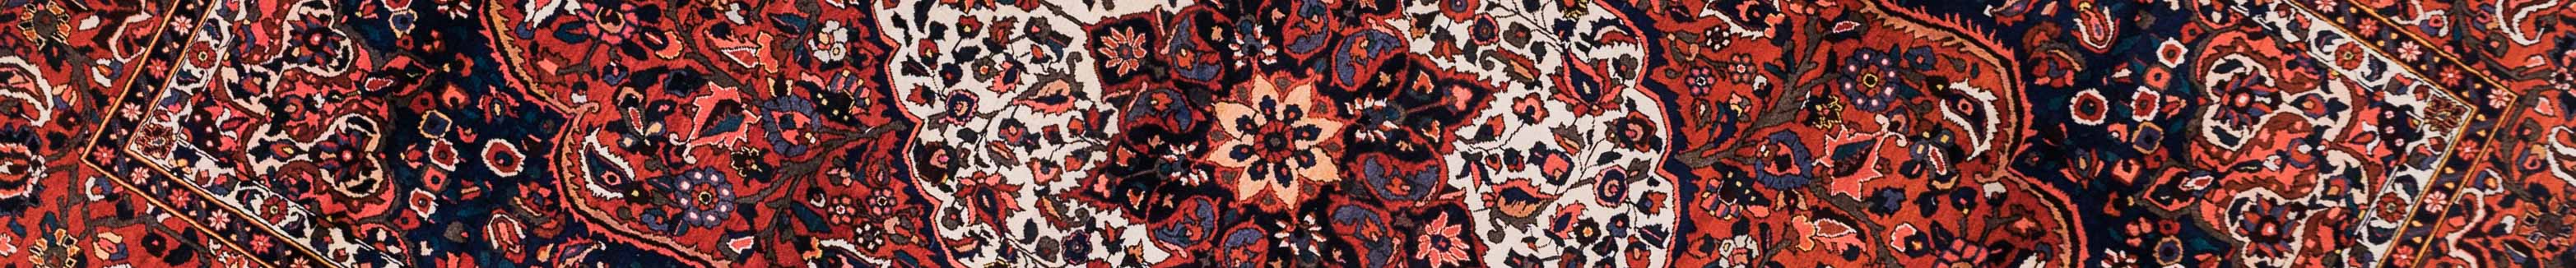 Bakhtiar Persian Carpet Rug N1Carpet Canada Montreal Tapis Persan 3900